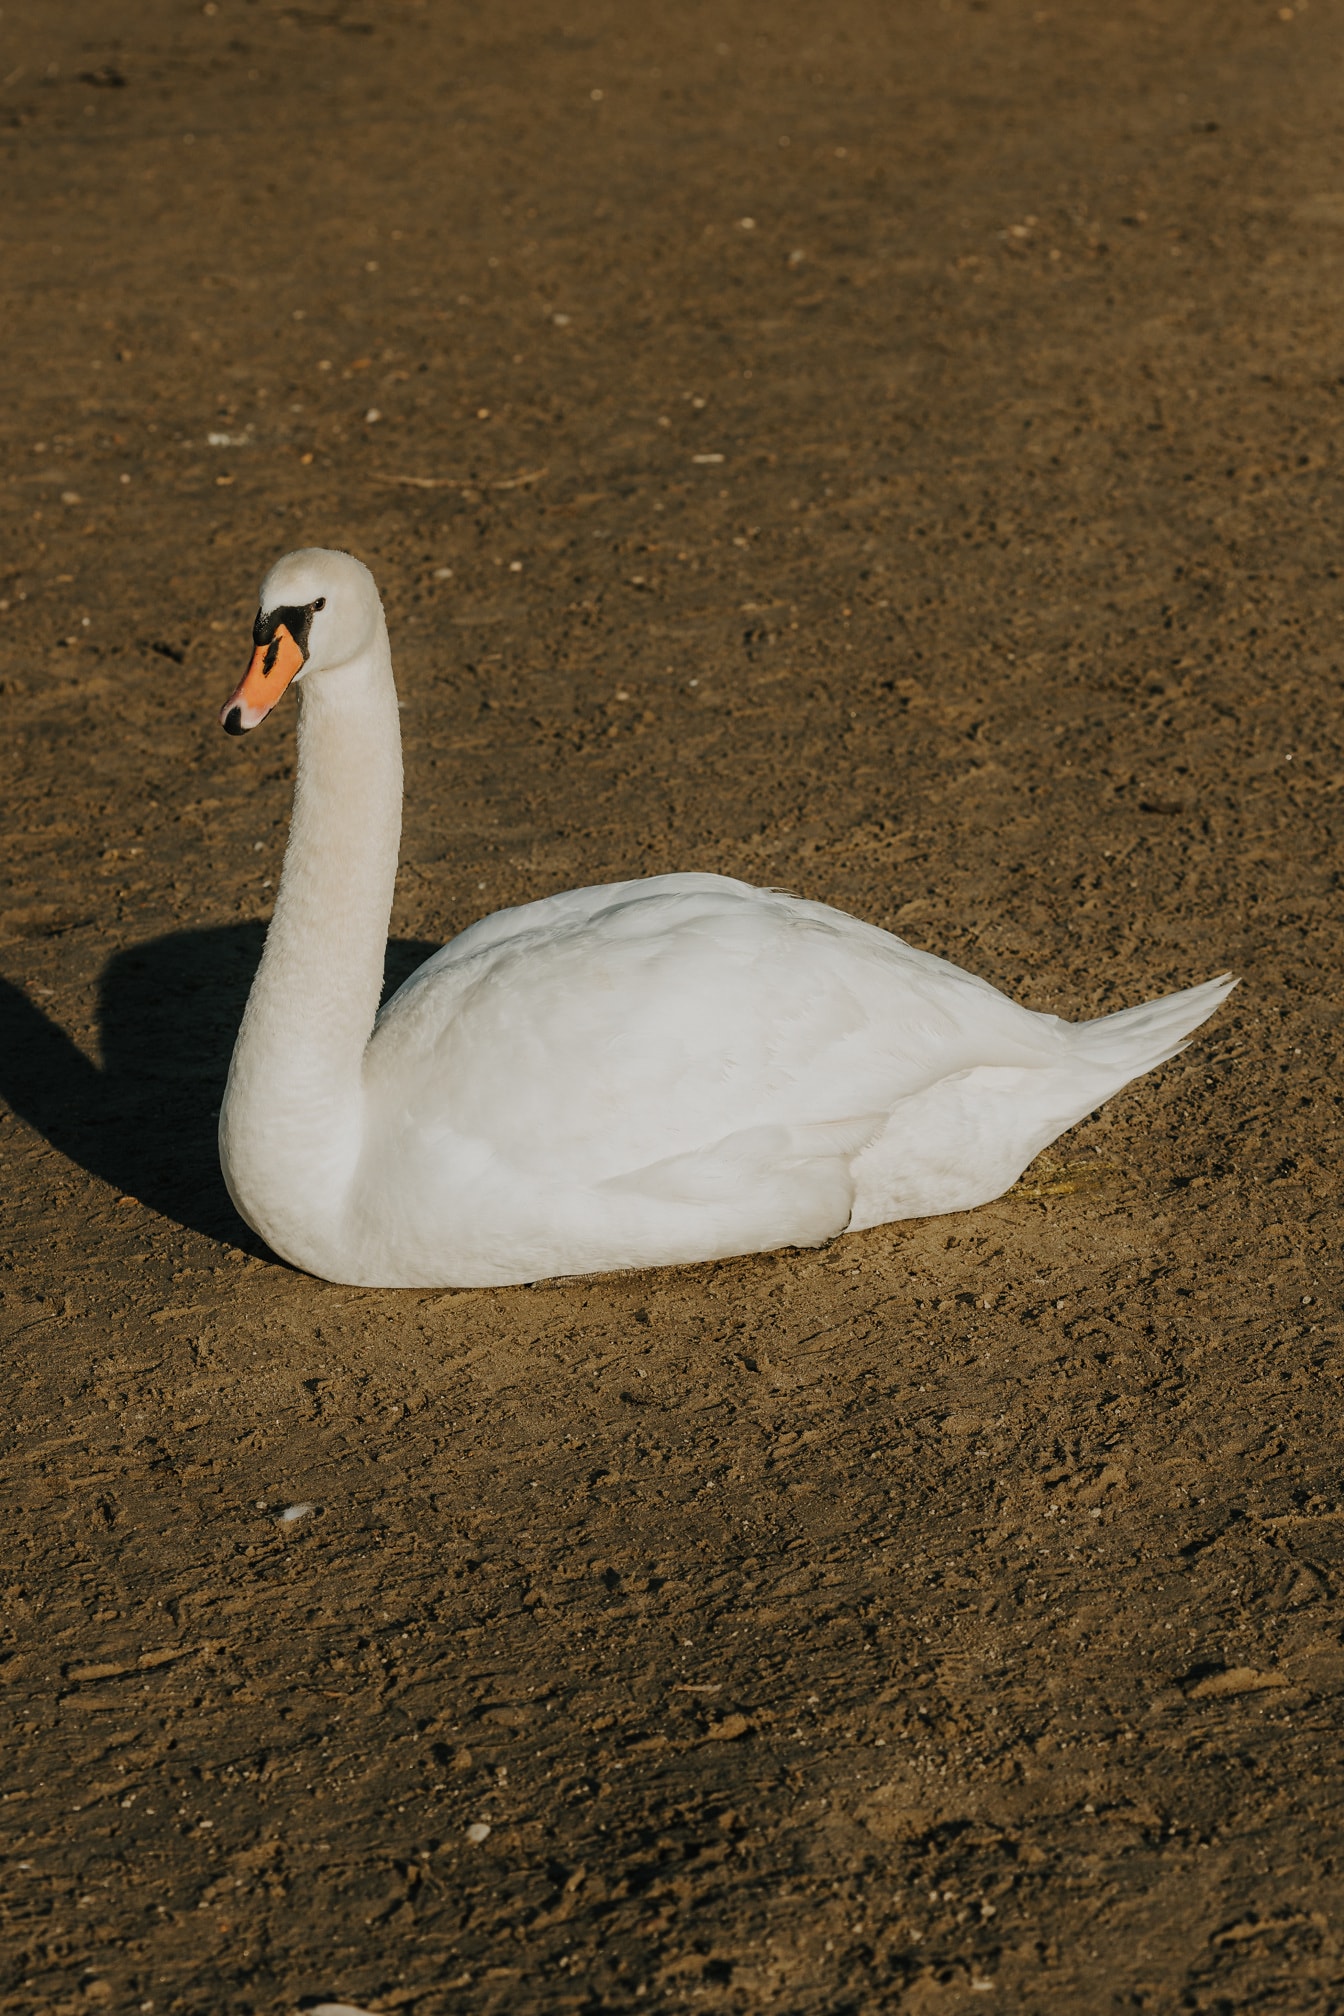 Biela labuť si užíva opaľovanie na mokrom piesku